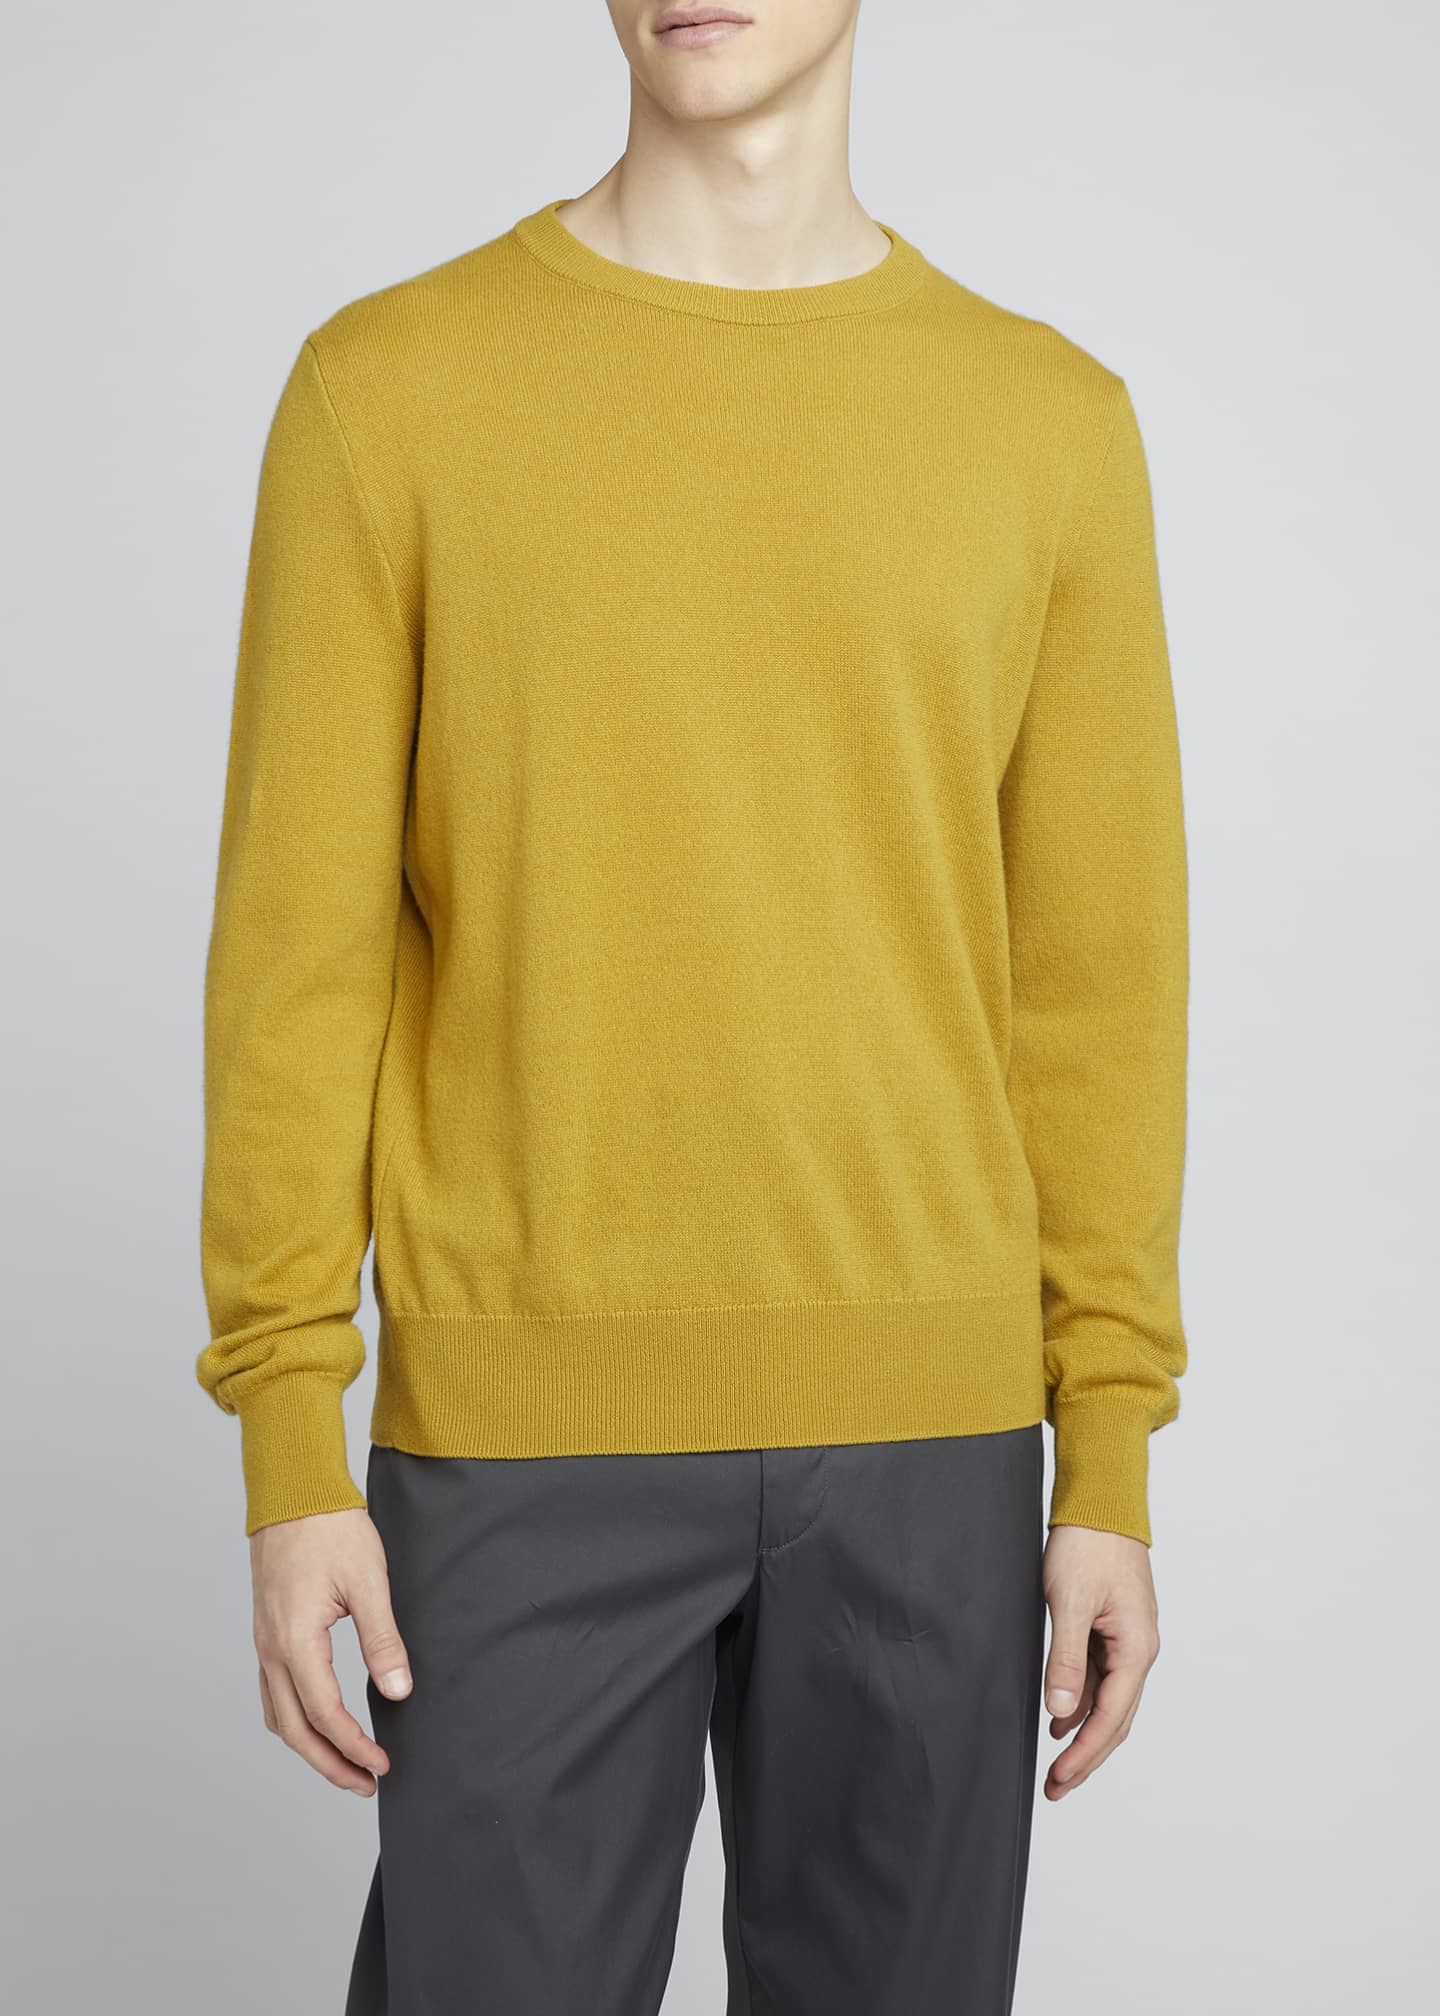 THE ROW Men's Benji Crewneck Cashmere Sweater - Bergdorf Goodman